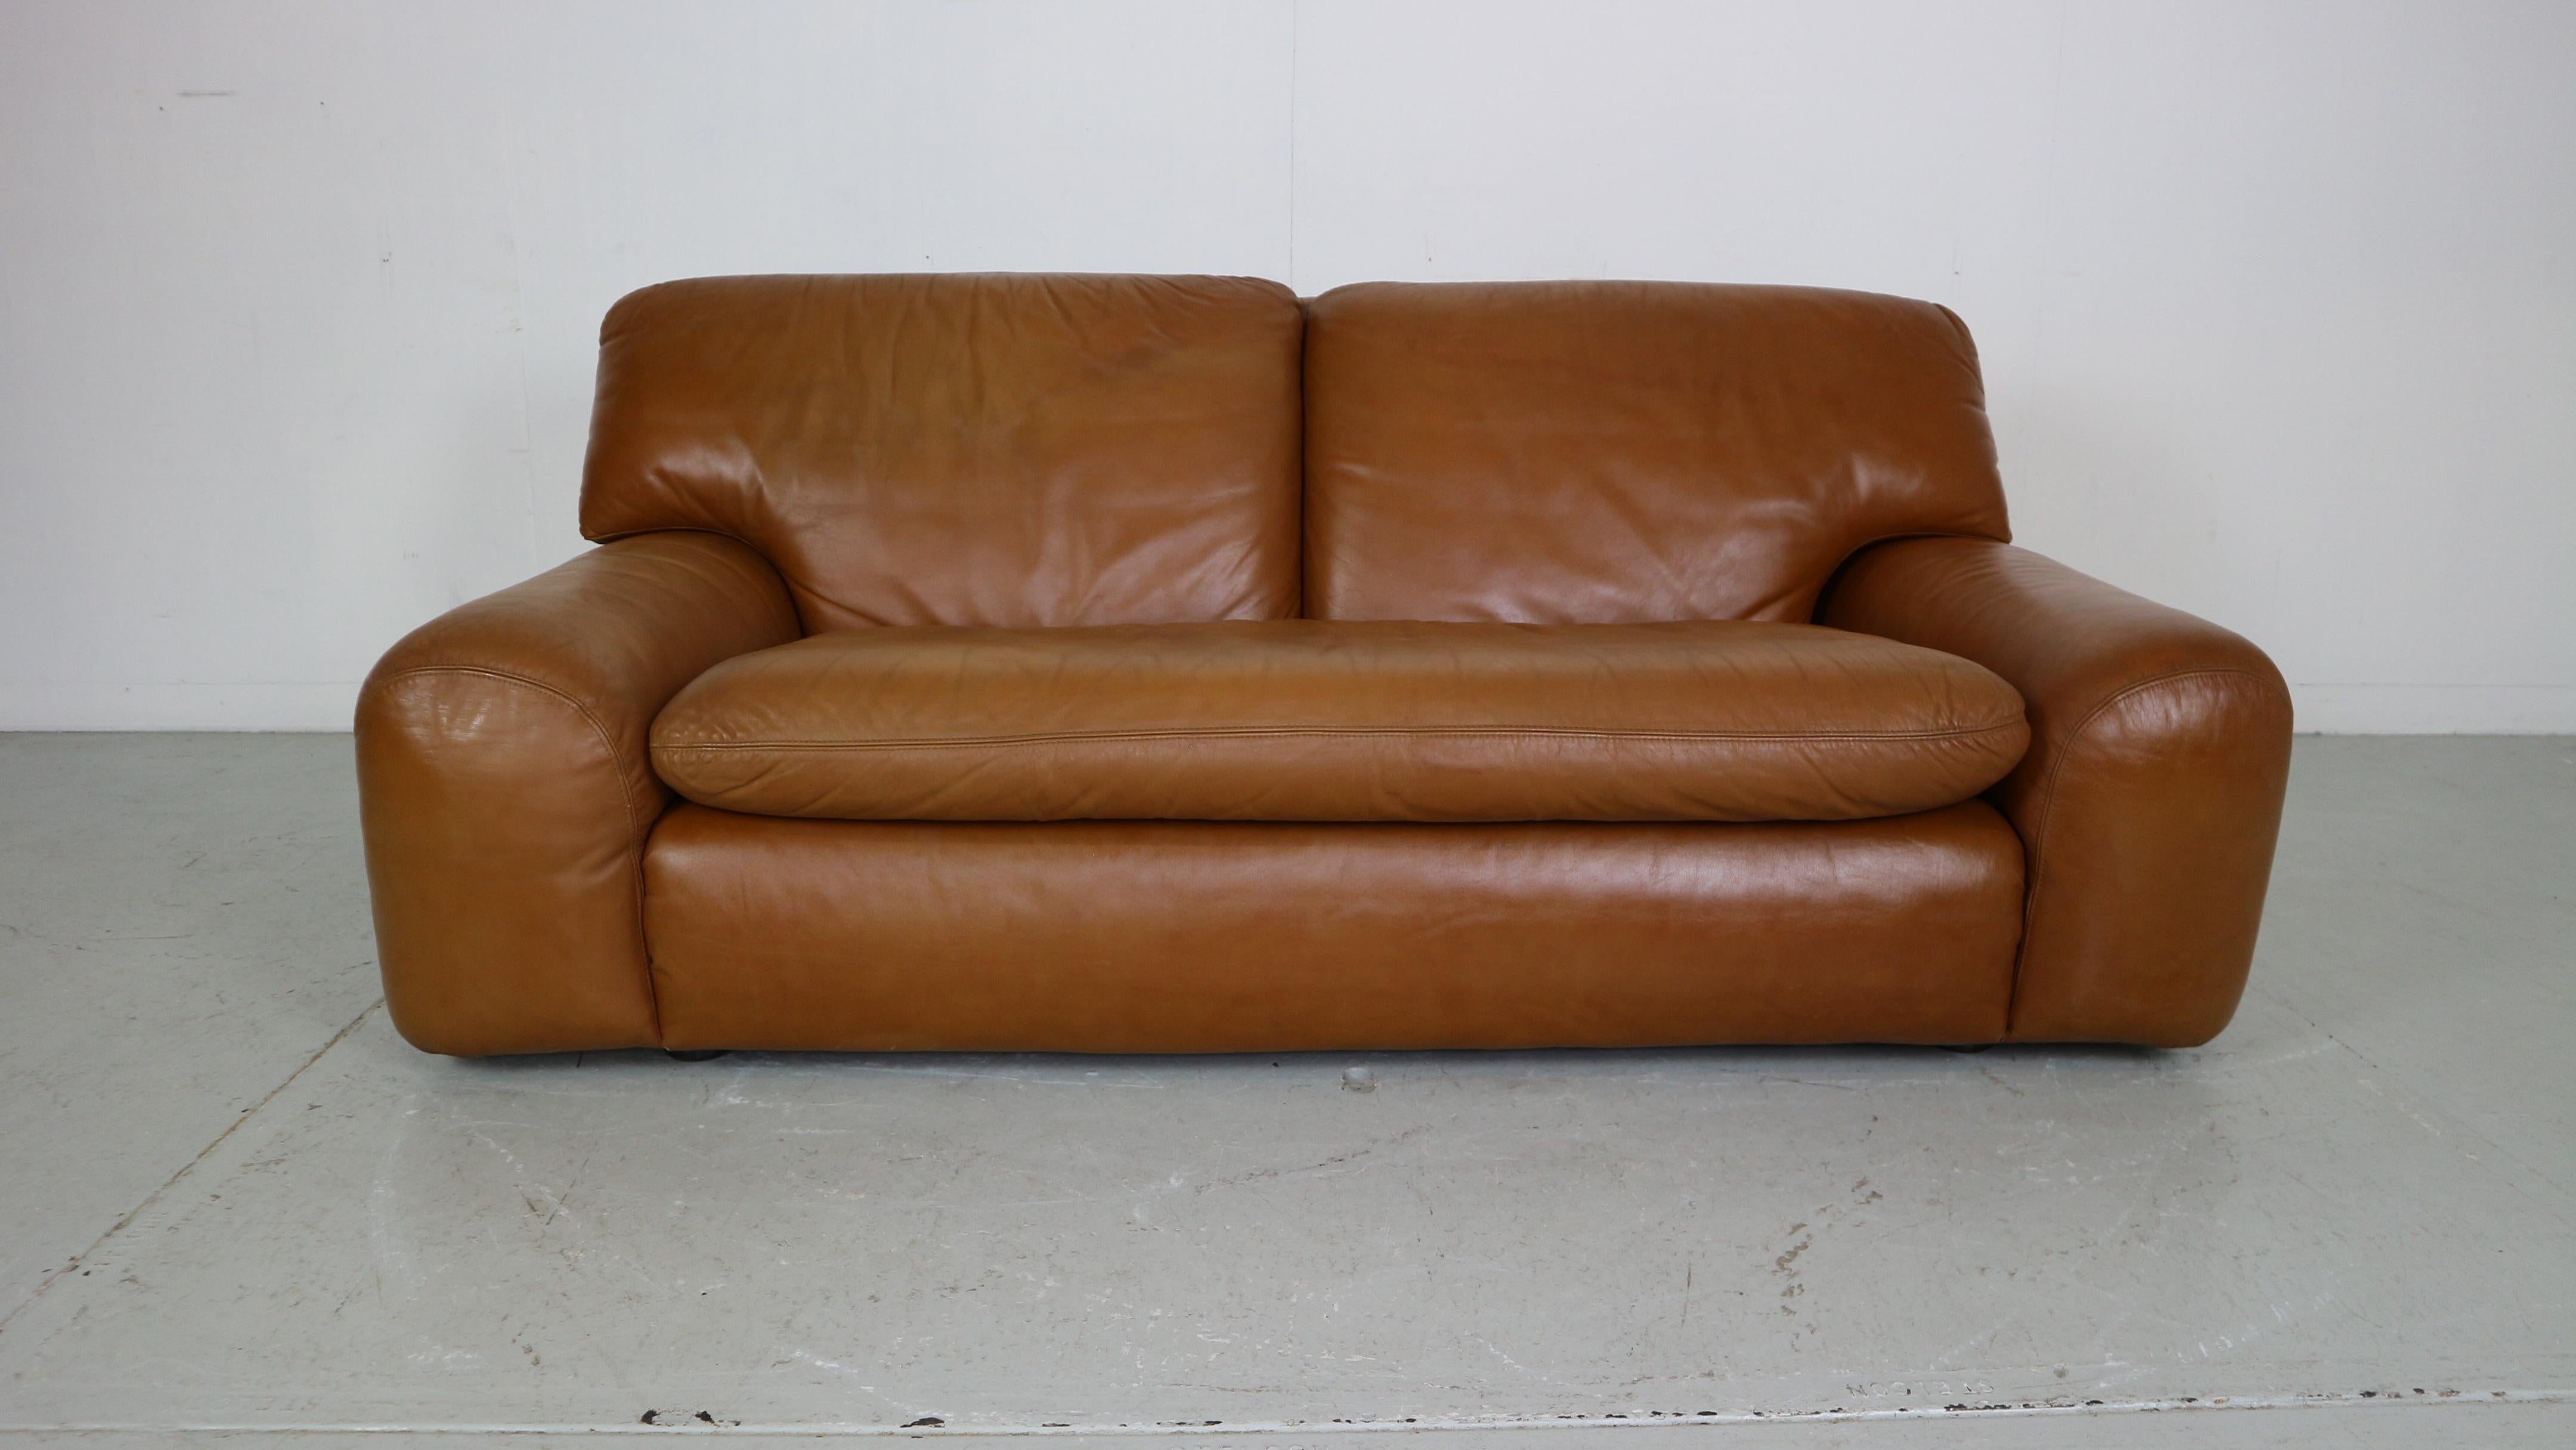 Schönes und seltenes 2-sitziges Bengodi-Sofa aus der Mitte der Moderne.  
Entworfen von Cini Boeri für Aflex Italien, 1970er Jahre.

Original cognacfarbenes Leder mit herrlicher Patina! 
Sehr guter Vintage-Zustand - keine Schäden.

Sehr bequemes und